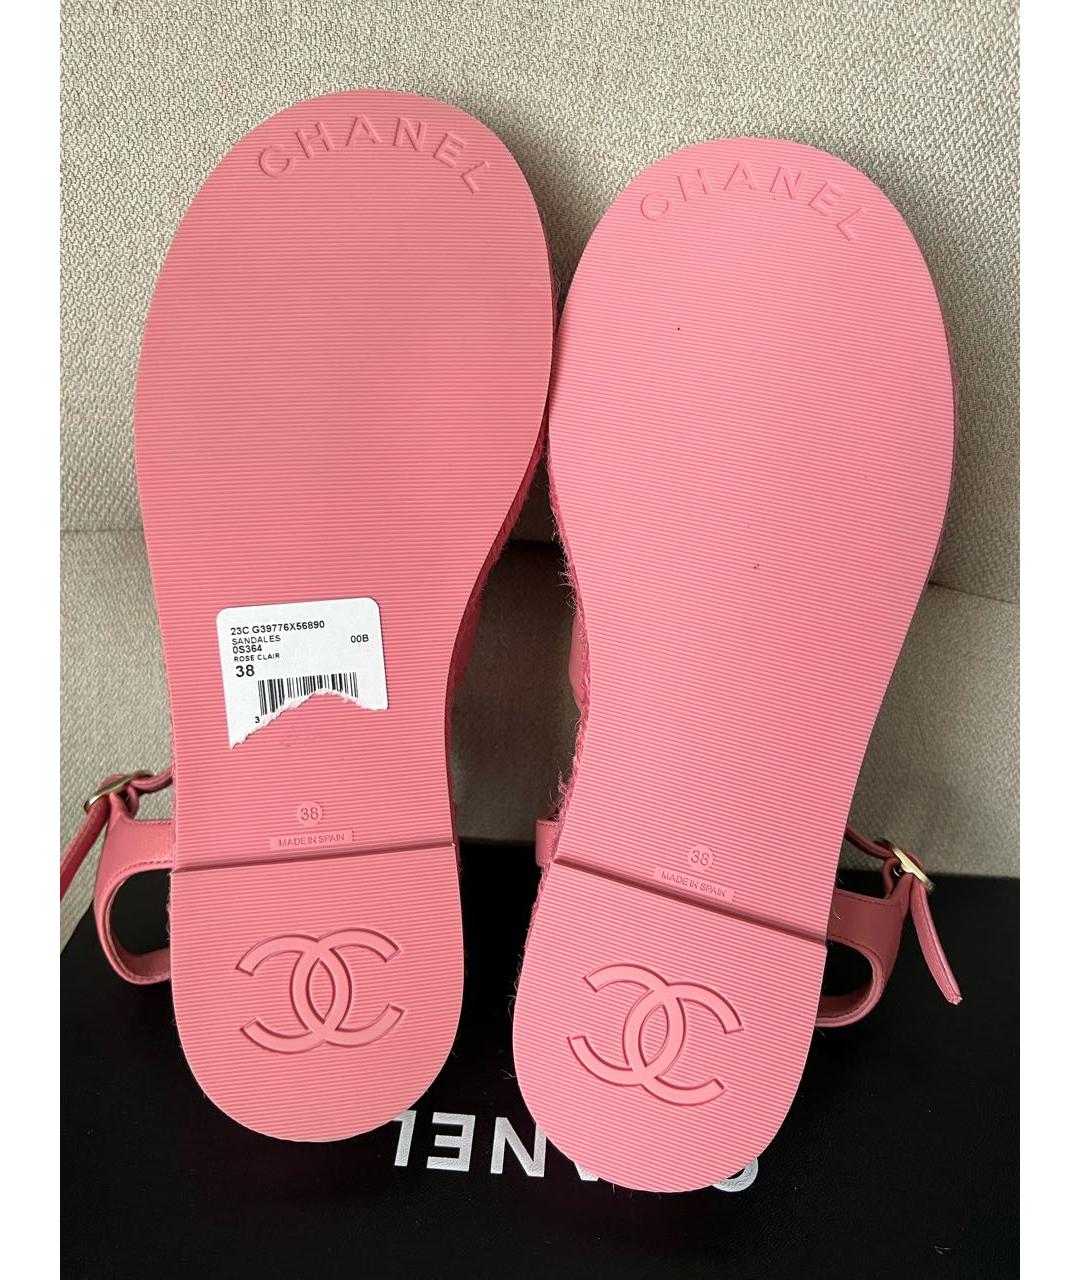 CHANEL Розовые кожаные сандалии, фото 4